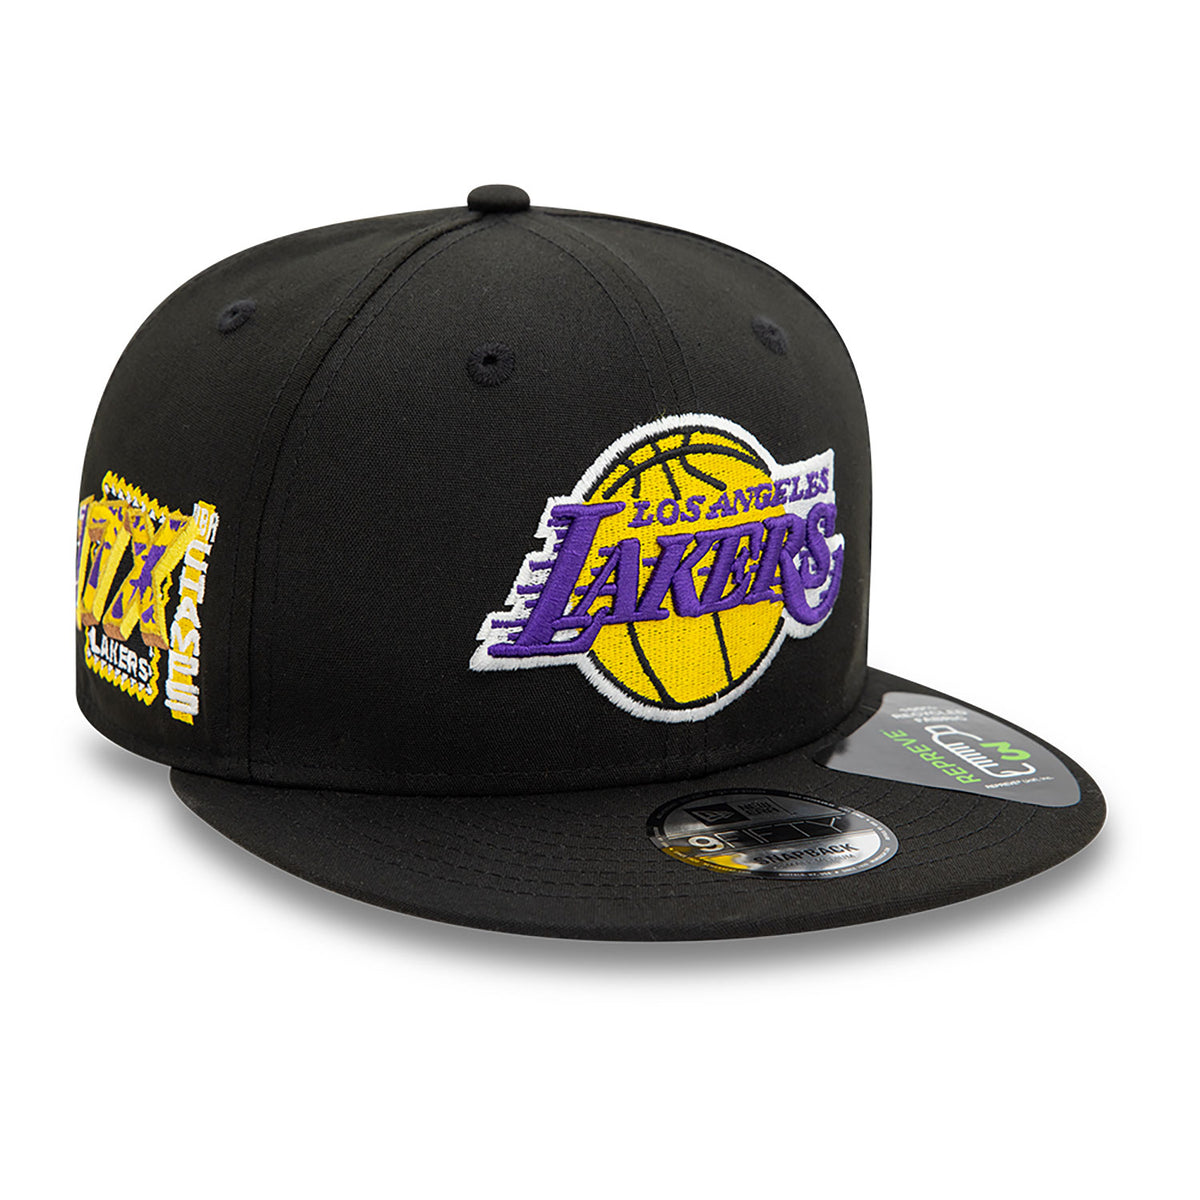 New Era LA Lakers Repreve 9FIFTY Snapback Cap Black - Soulsideshop